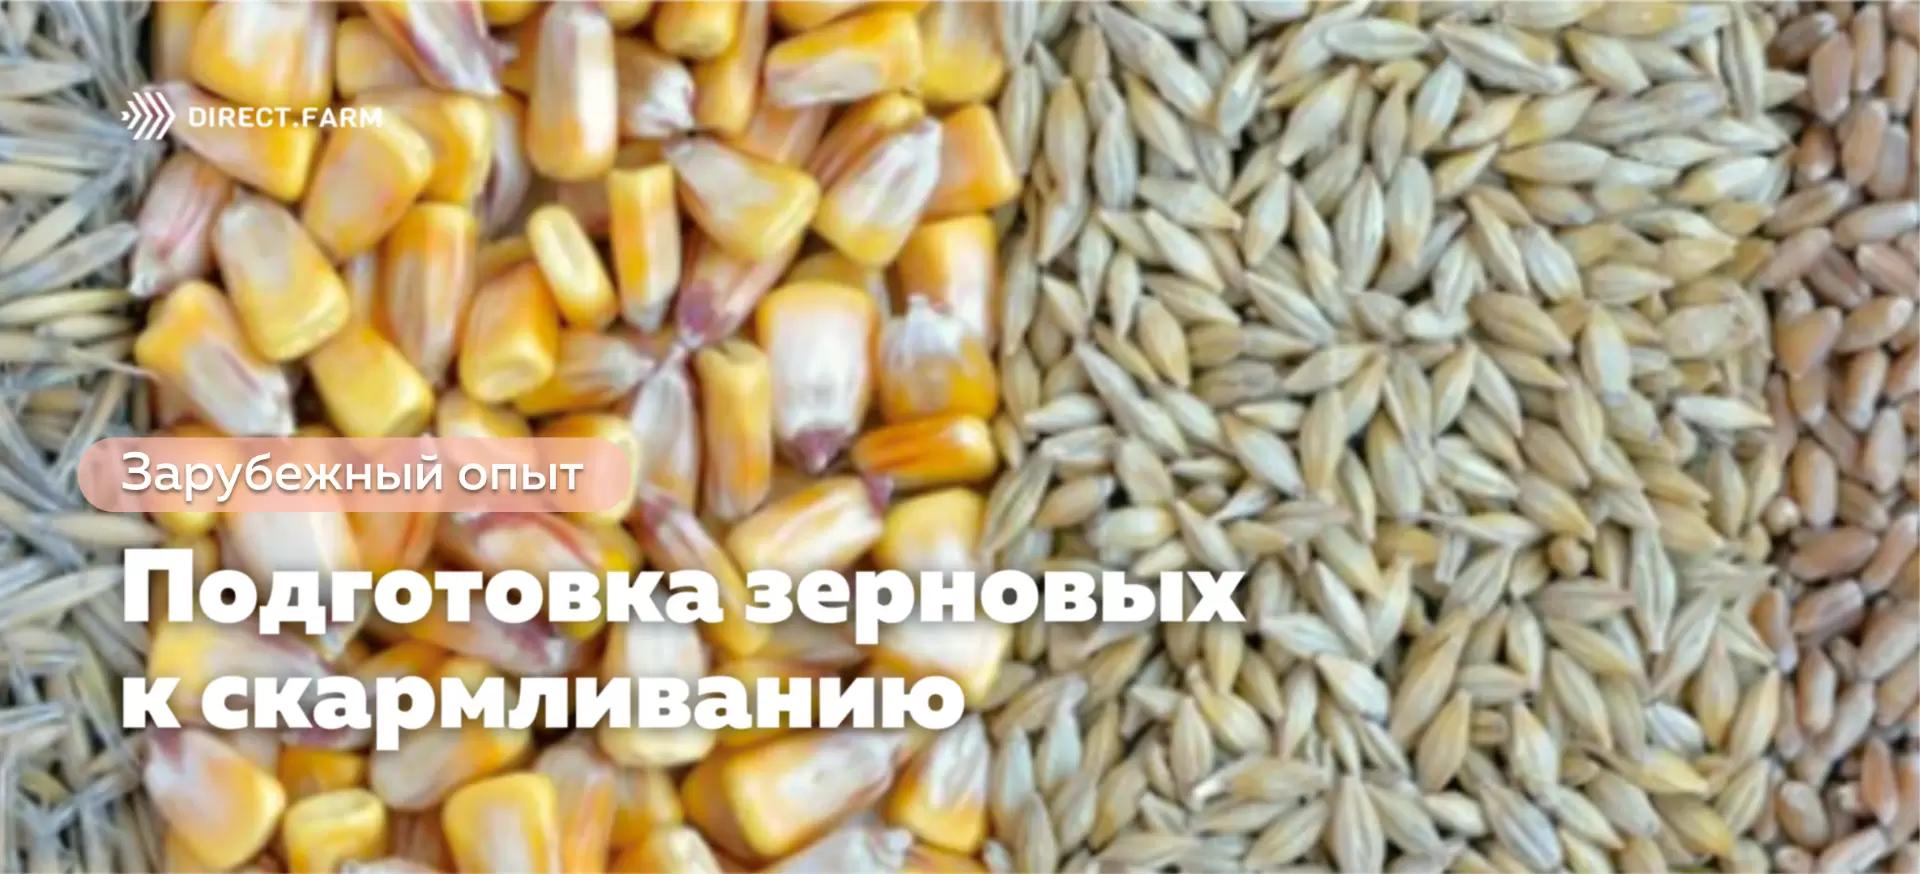 Как подготовка зерновых кормов к скармливанию повышает их питательную ценность